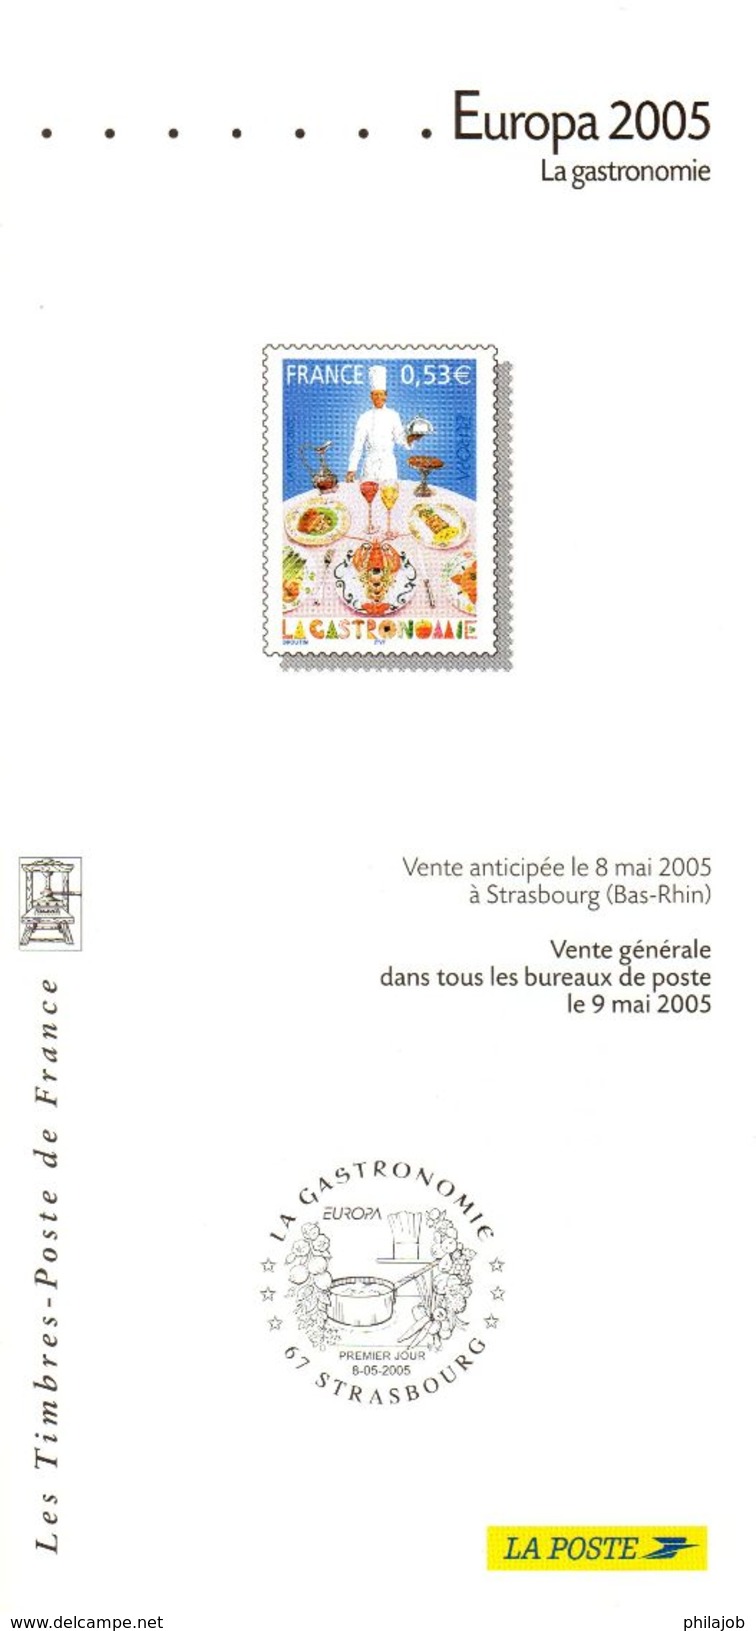 FRANCE 2004 à 2006 : 3 Fascicules Publicitaires Avec Photo Du Timbre + Cachet 1er Jour " EUROPA " - UNESCO